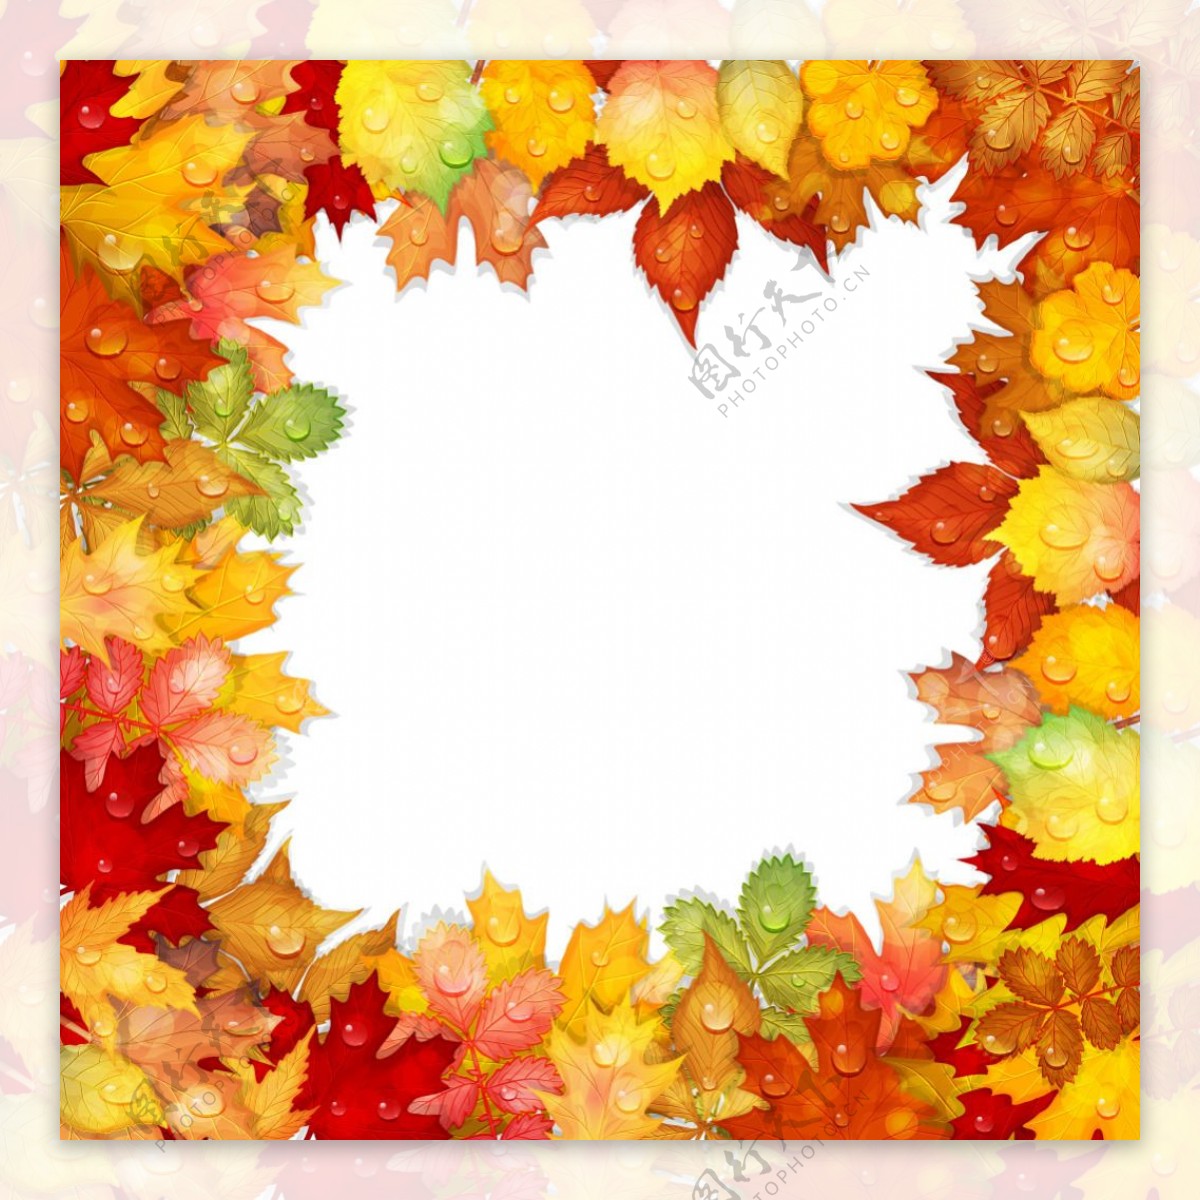 秋天的叶子与水滴矢量边框素材